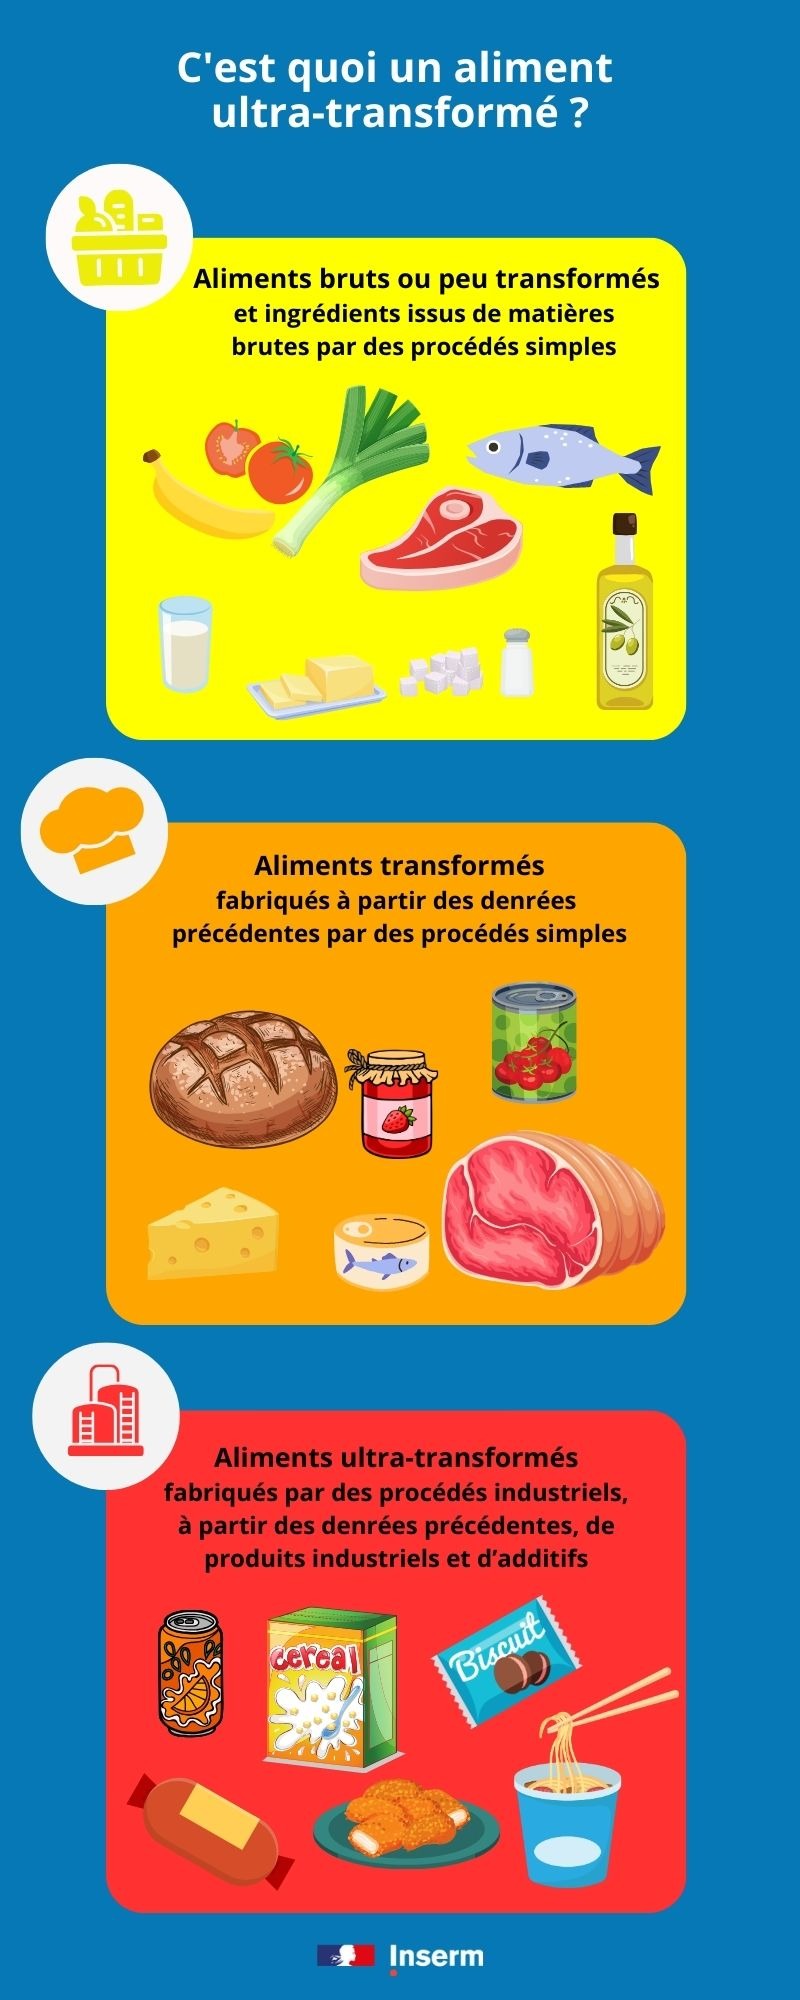 Infographie de l'Inserm sur les aliments ultra-transformés